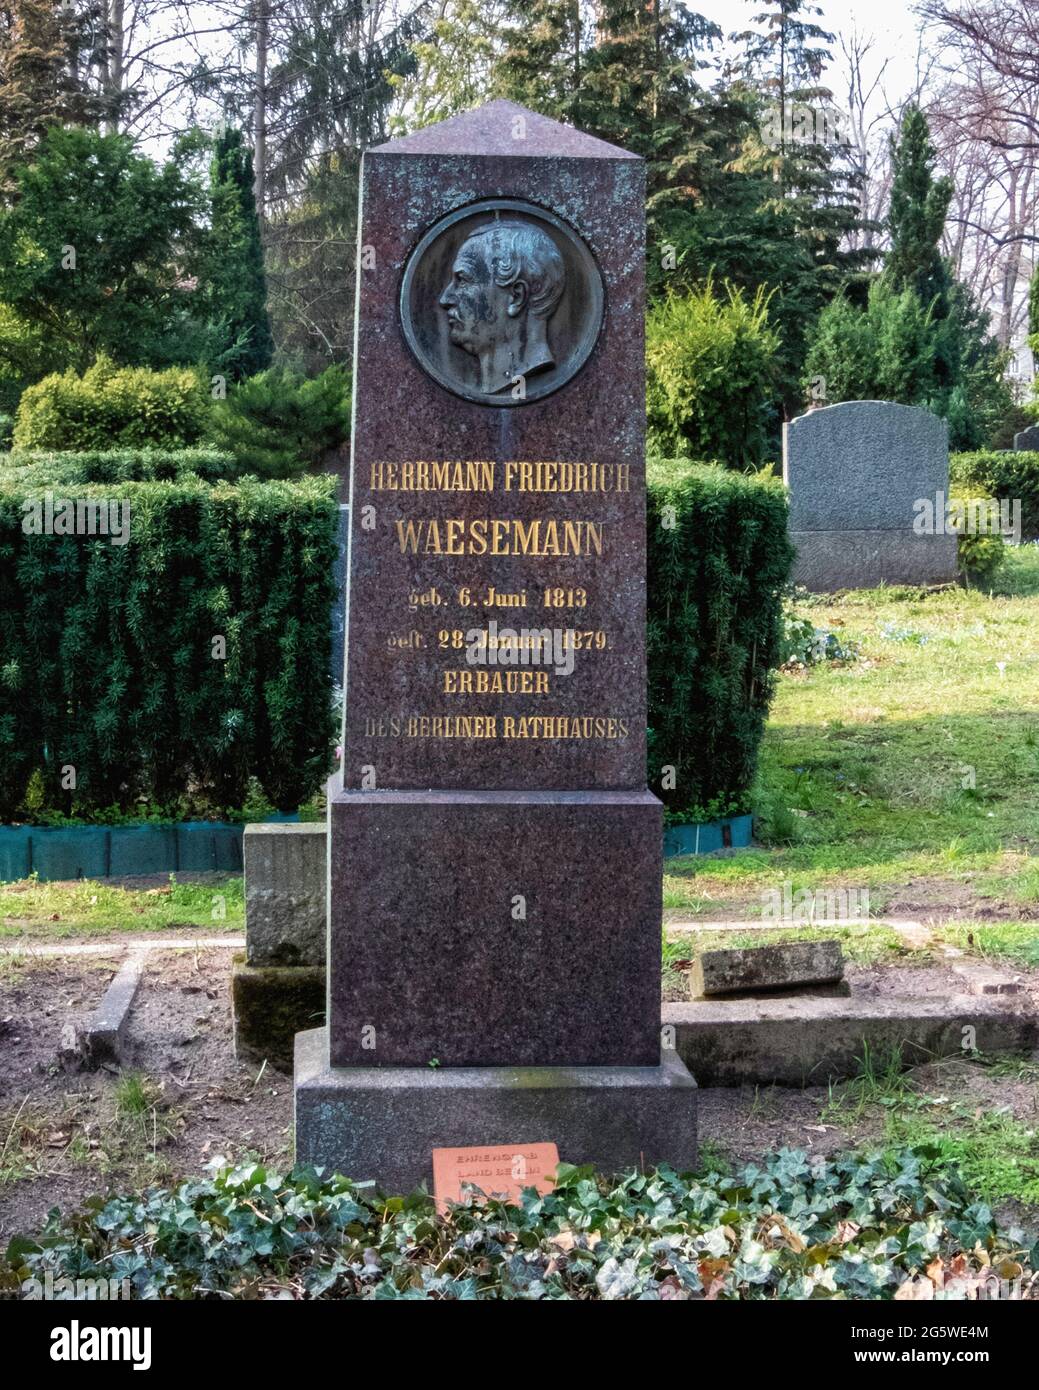 Grave of Hermann Friedrich Waesemann, Builder of Town halls, in Friedhof der Sophien Gemeinde cemetery, Mitte, Berlin Stock Photo